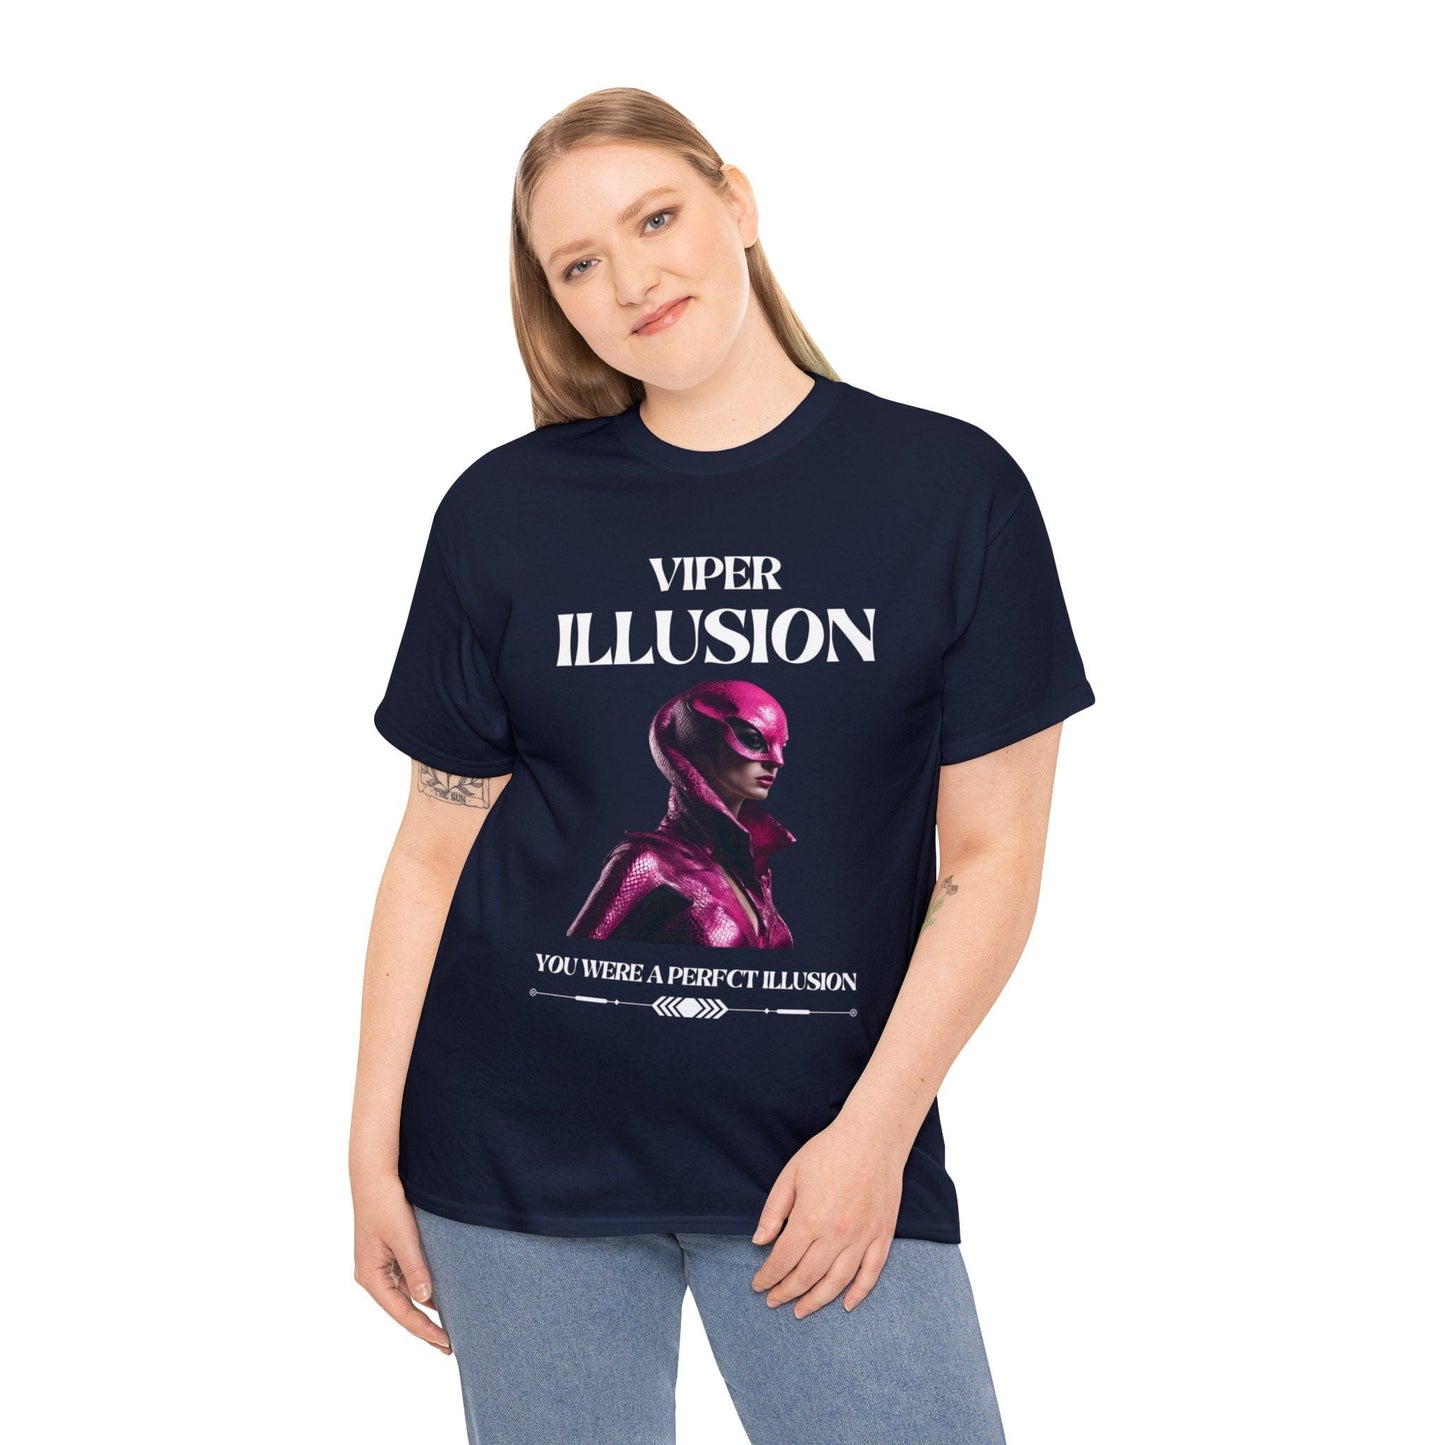 Viper Illusion Tee Flashlander